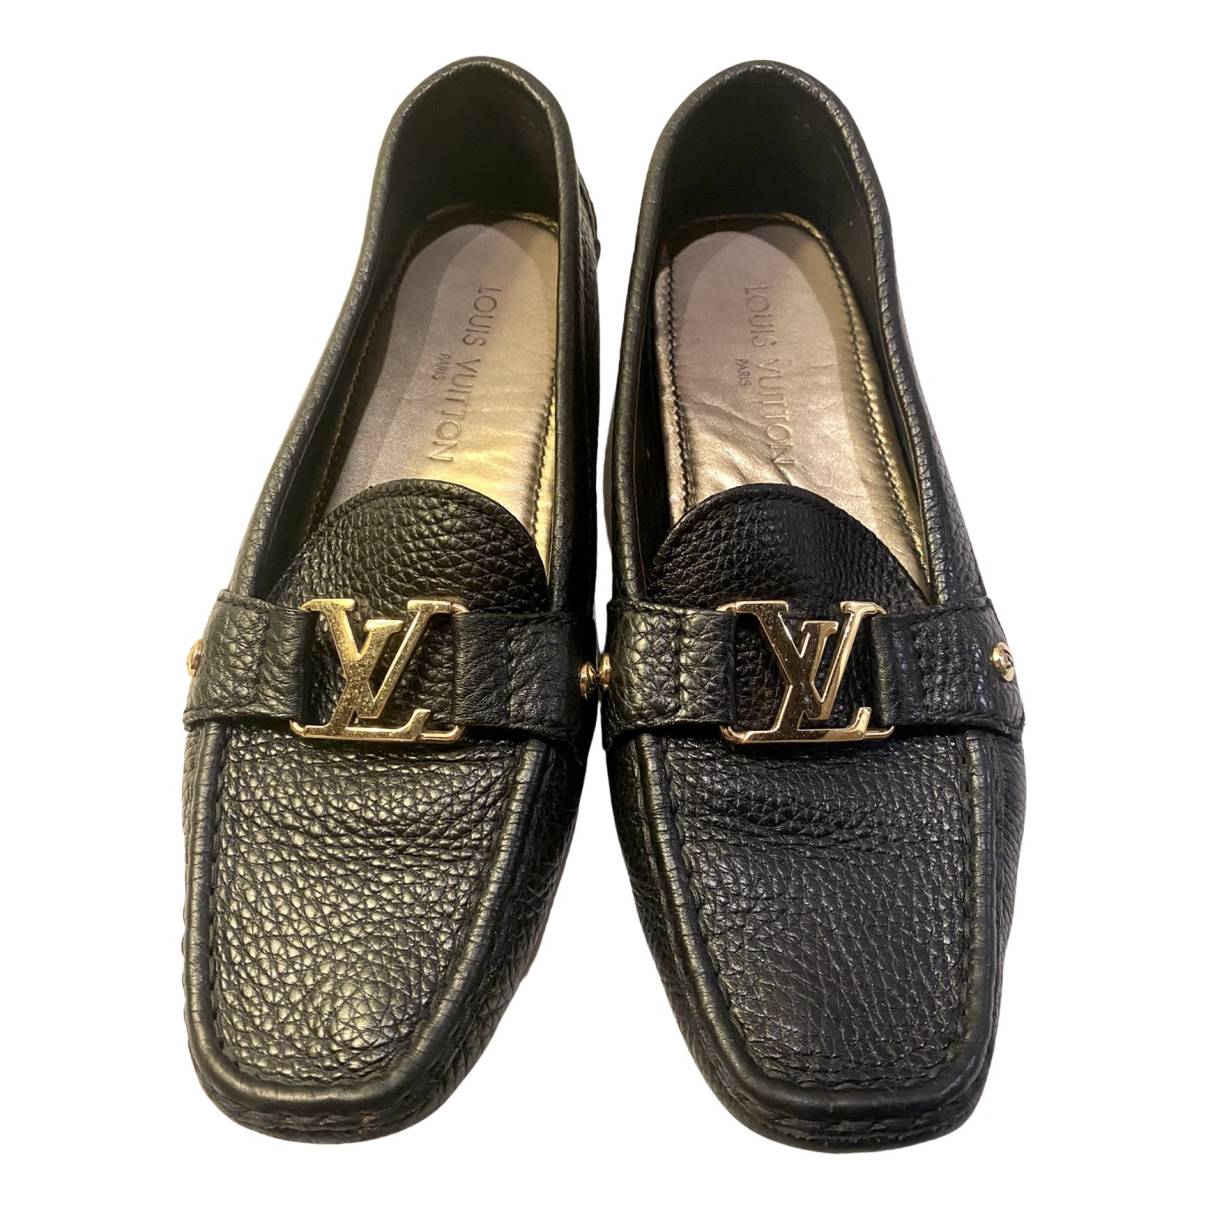 Louis Vuitton Mokassins aus Leder - Schwarz - Größe 39 - 31255206